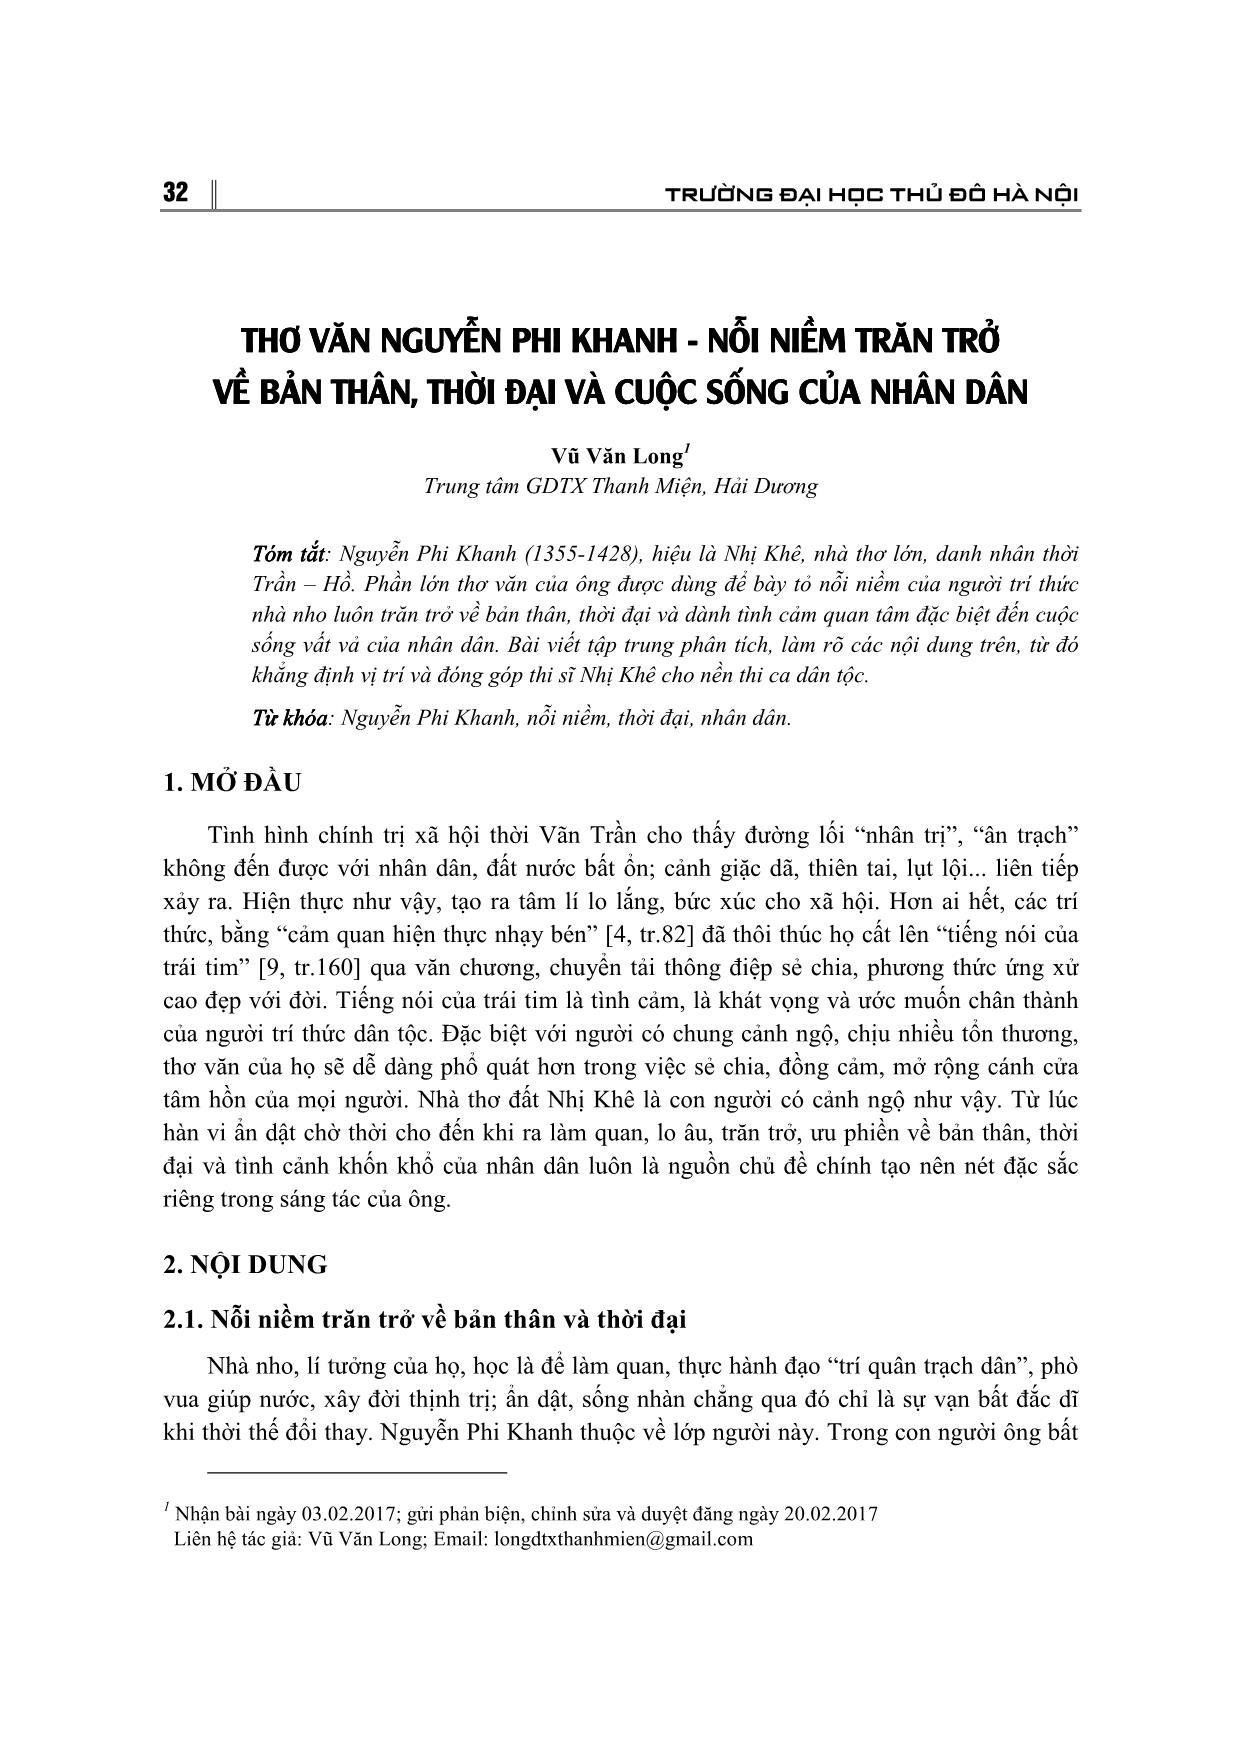 Thơ văn Nguyễn Phi Khanh - Nỗi niềm trăn trở về bản thân, thời đại và cuộc sống của nhân dân trang 1